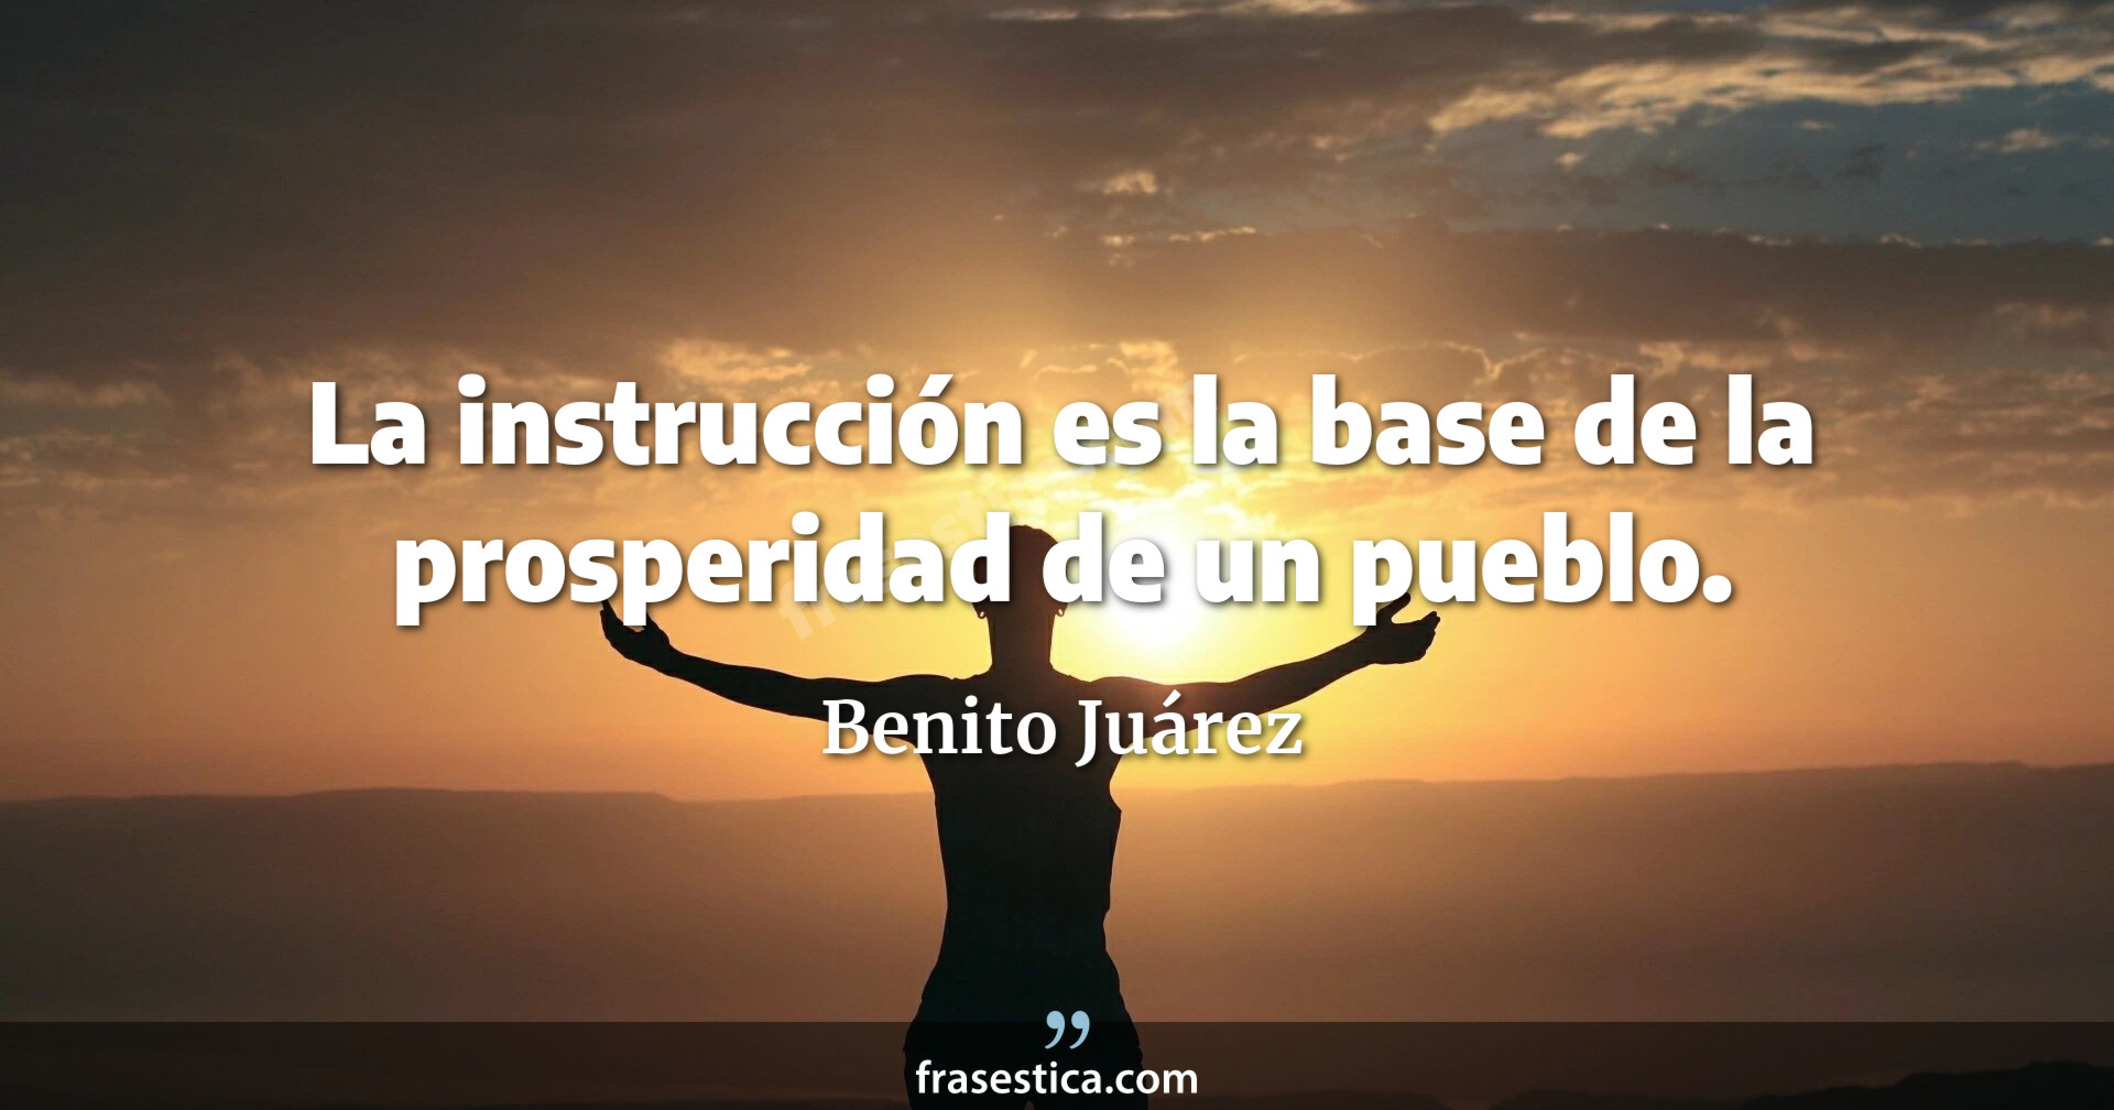 La instrucción es la base de la prosperidad de un pueblo. - Benito Juárez